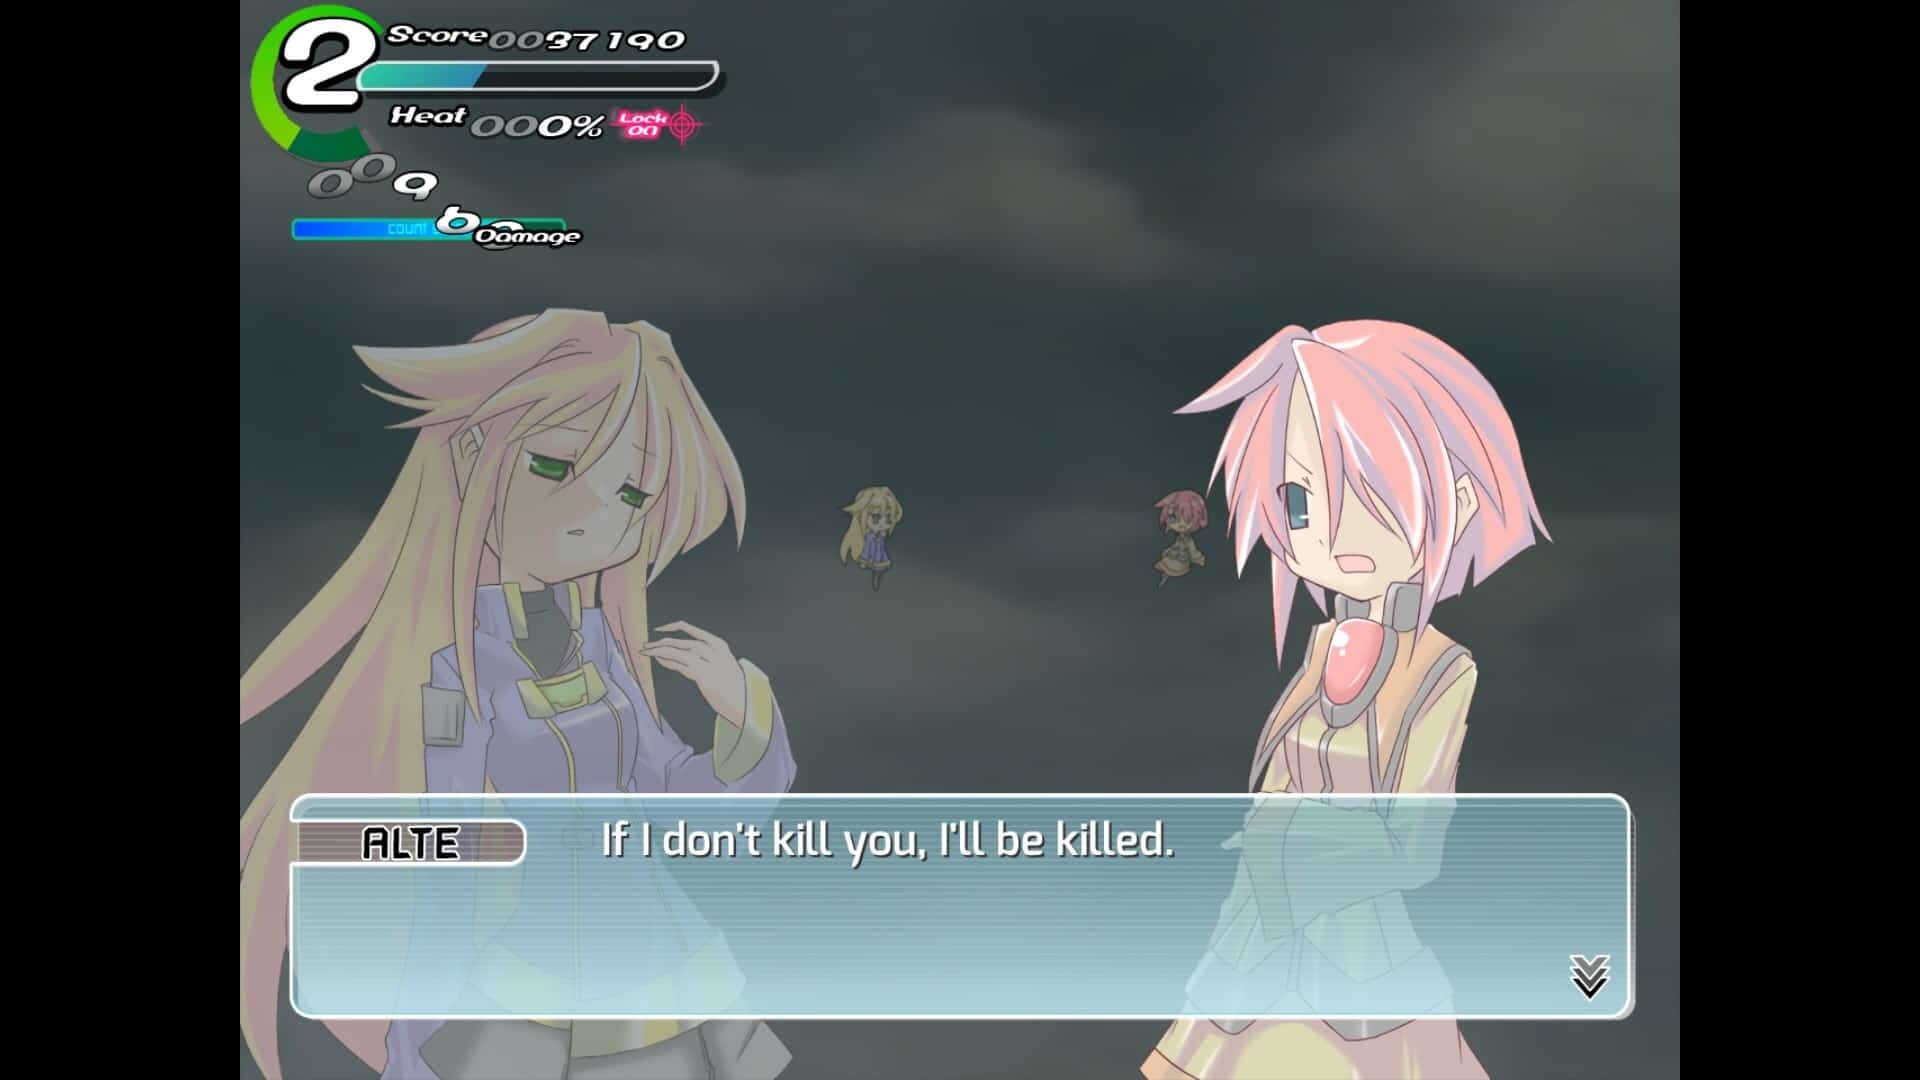 Sora game screenshot, boss dialogue